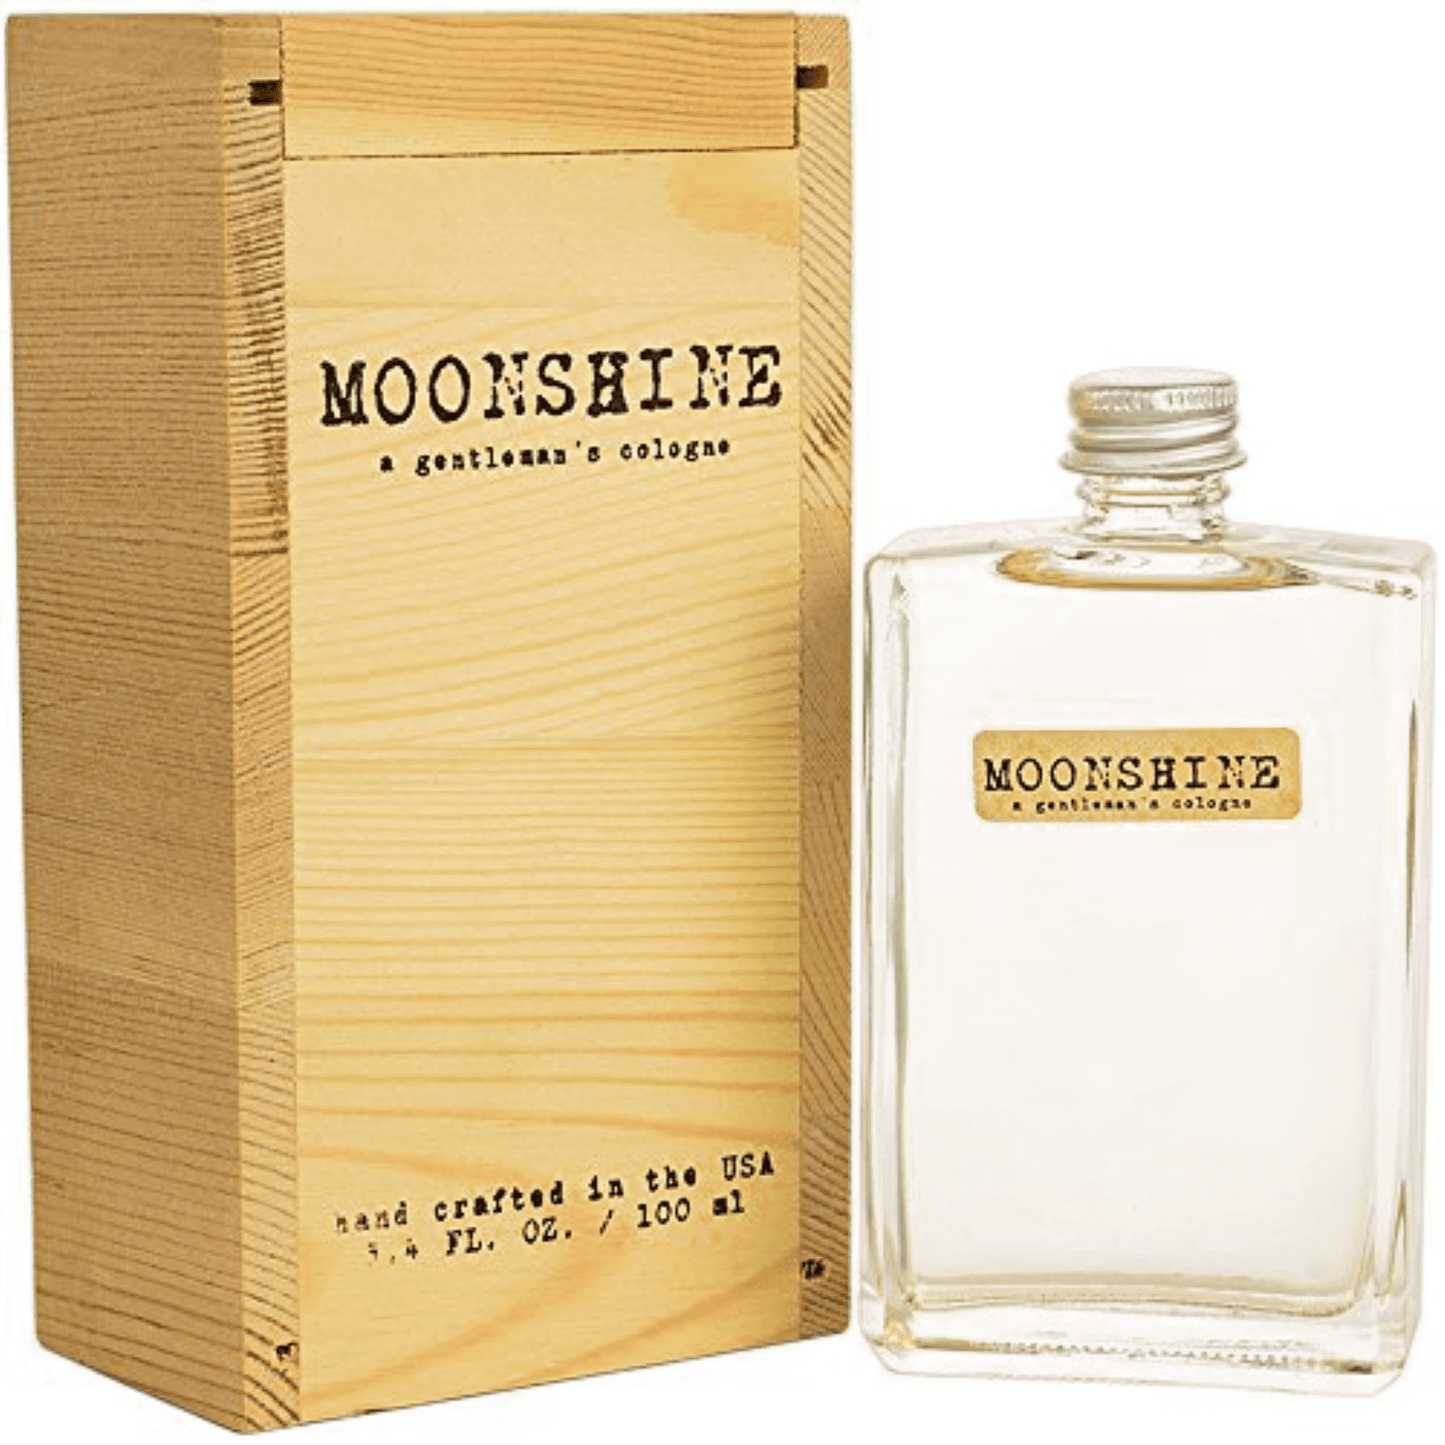 Moonshine Cologne